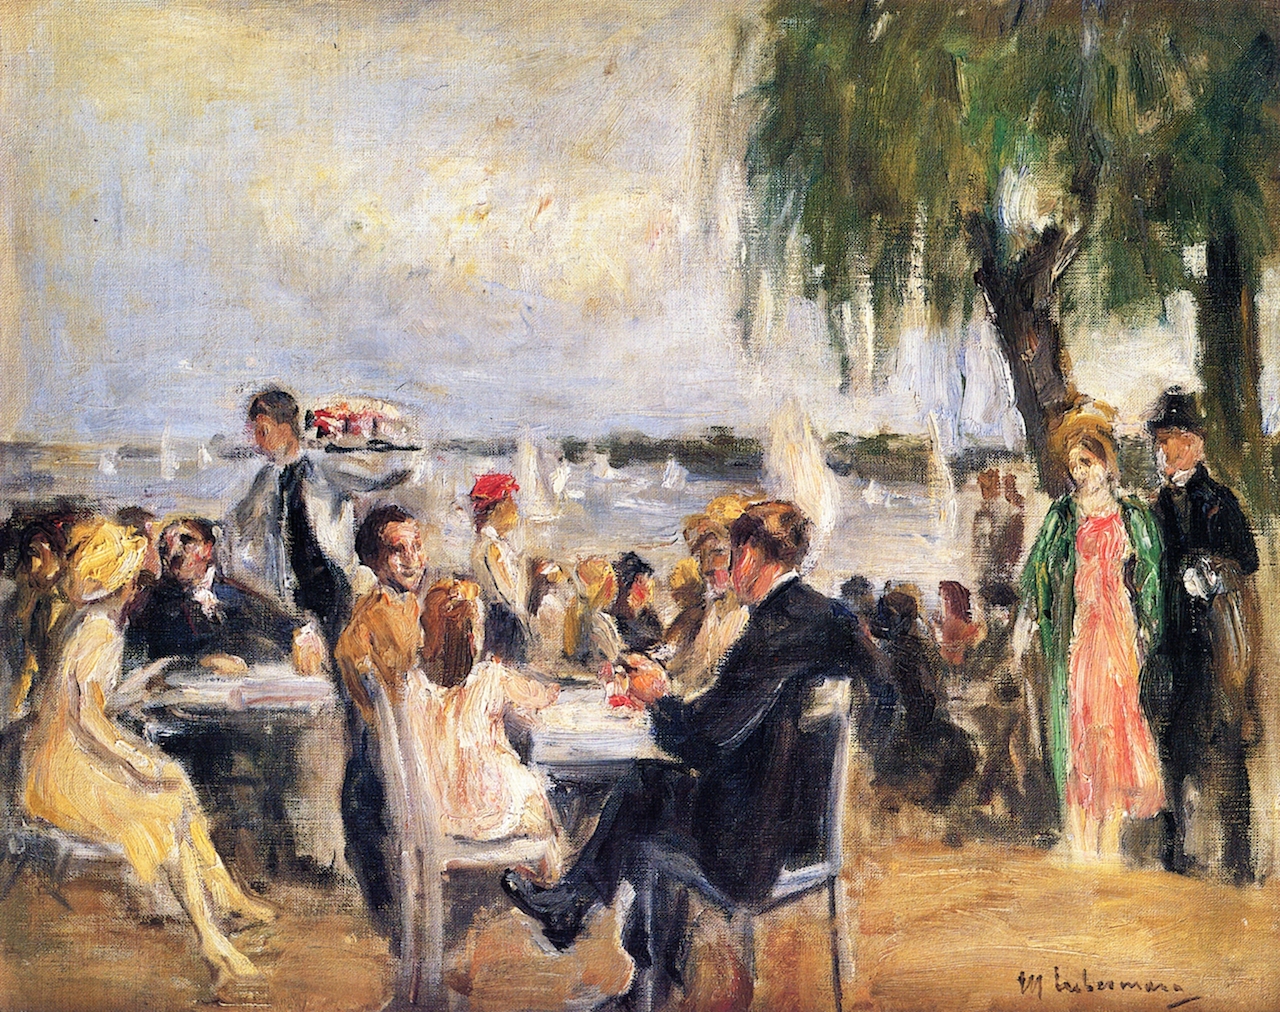 Garden Cafe on the River Elbe by Max Liebermann - circa 1922